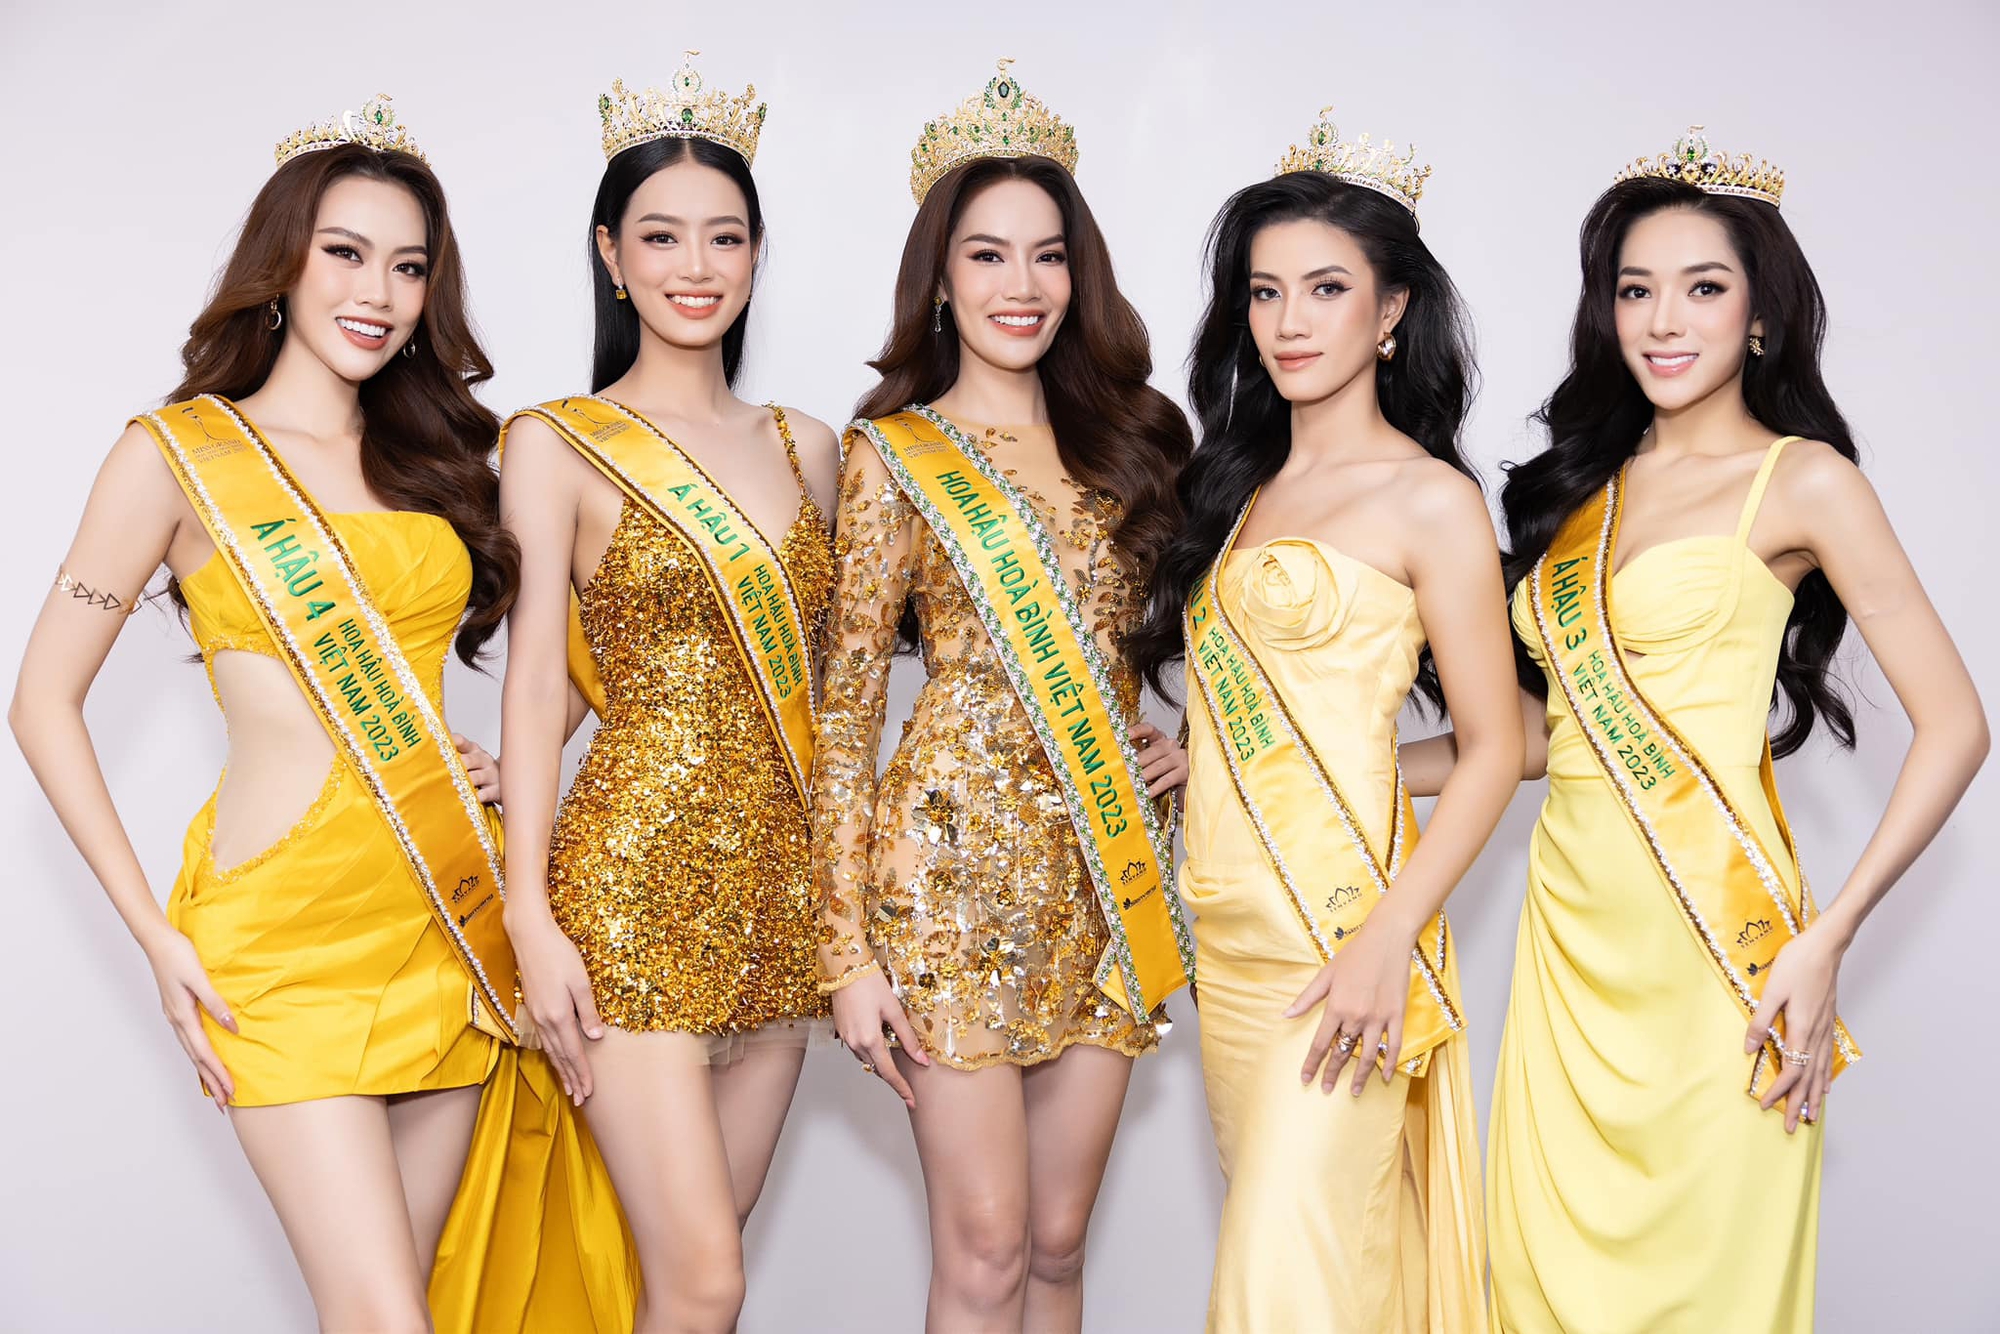 Khung ảnh bùng nổ nhan sắc của Top 5 Miss Grand Vietnam, Lê Hoàng Phương và Bùi Khánh Linh so kè visual căng đét - Ảnh 5.